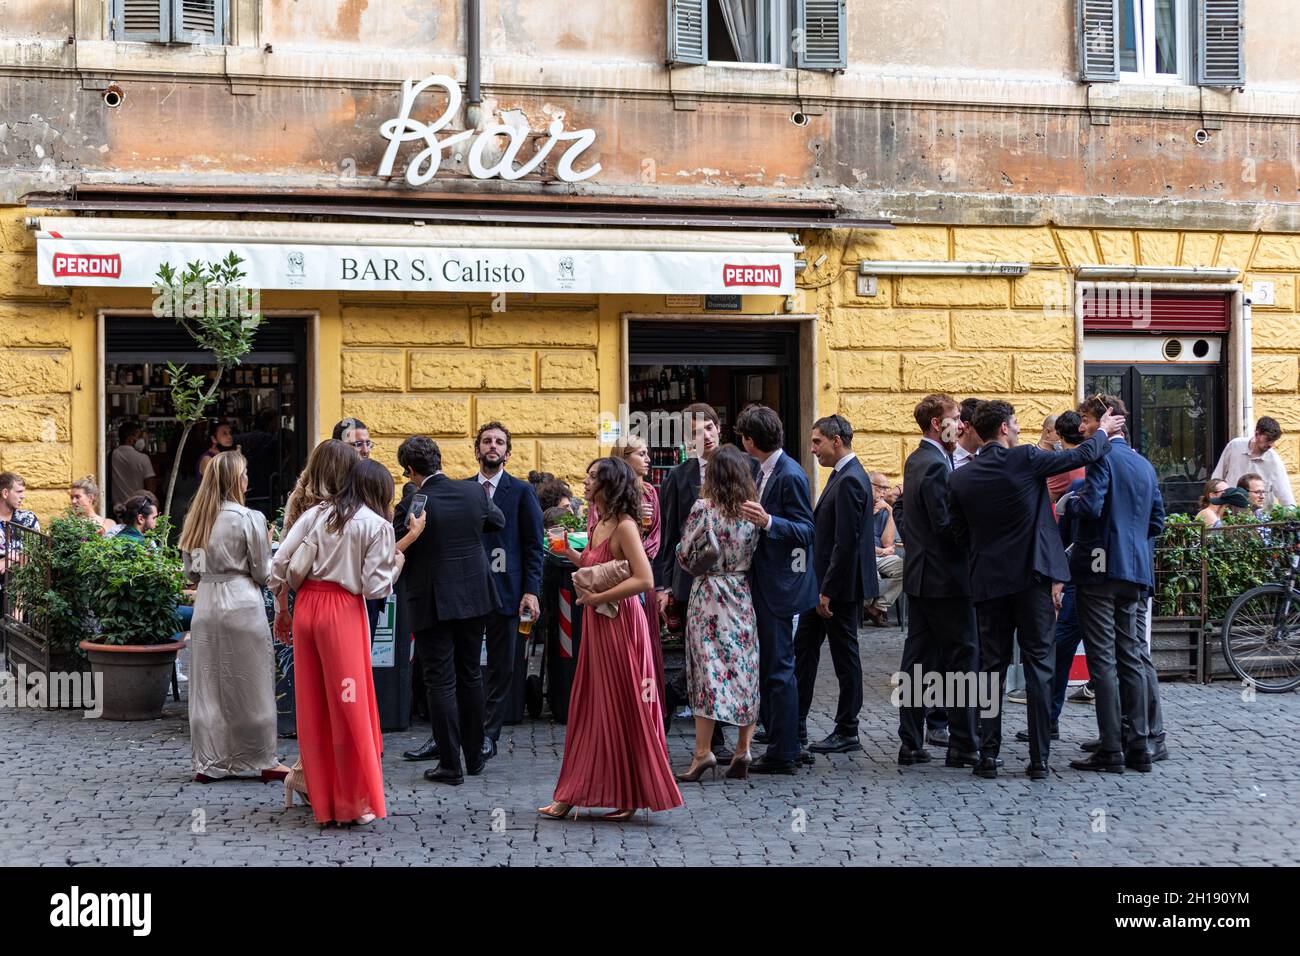 Auf der Piazza di San Calisto vor der Bar S. Calisto im Stadtteil Trastevere in Rom, Italien, genießen Menschen Getränke Stockfoto